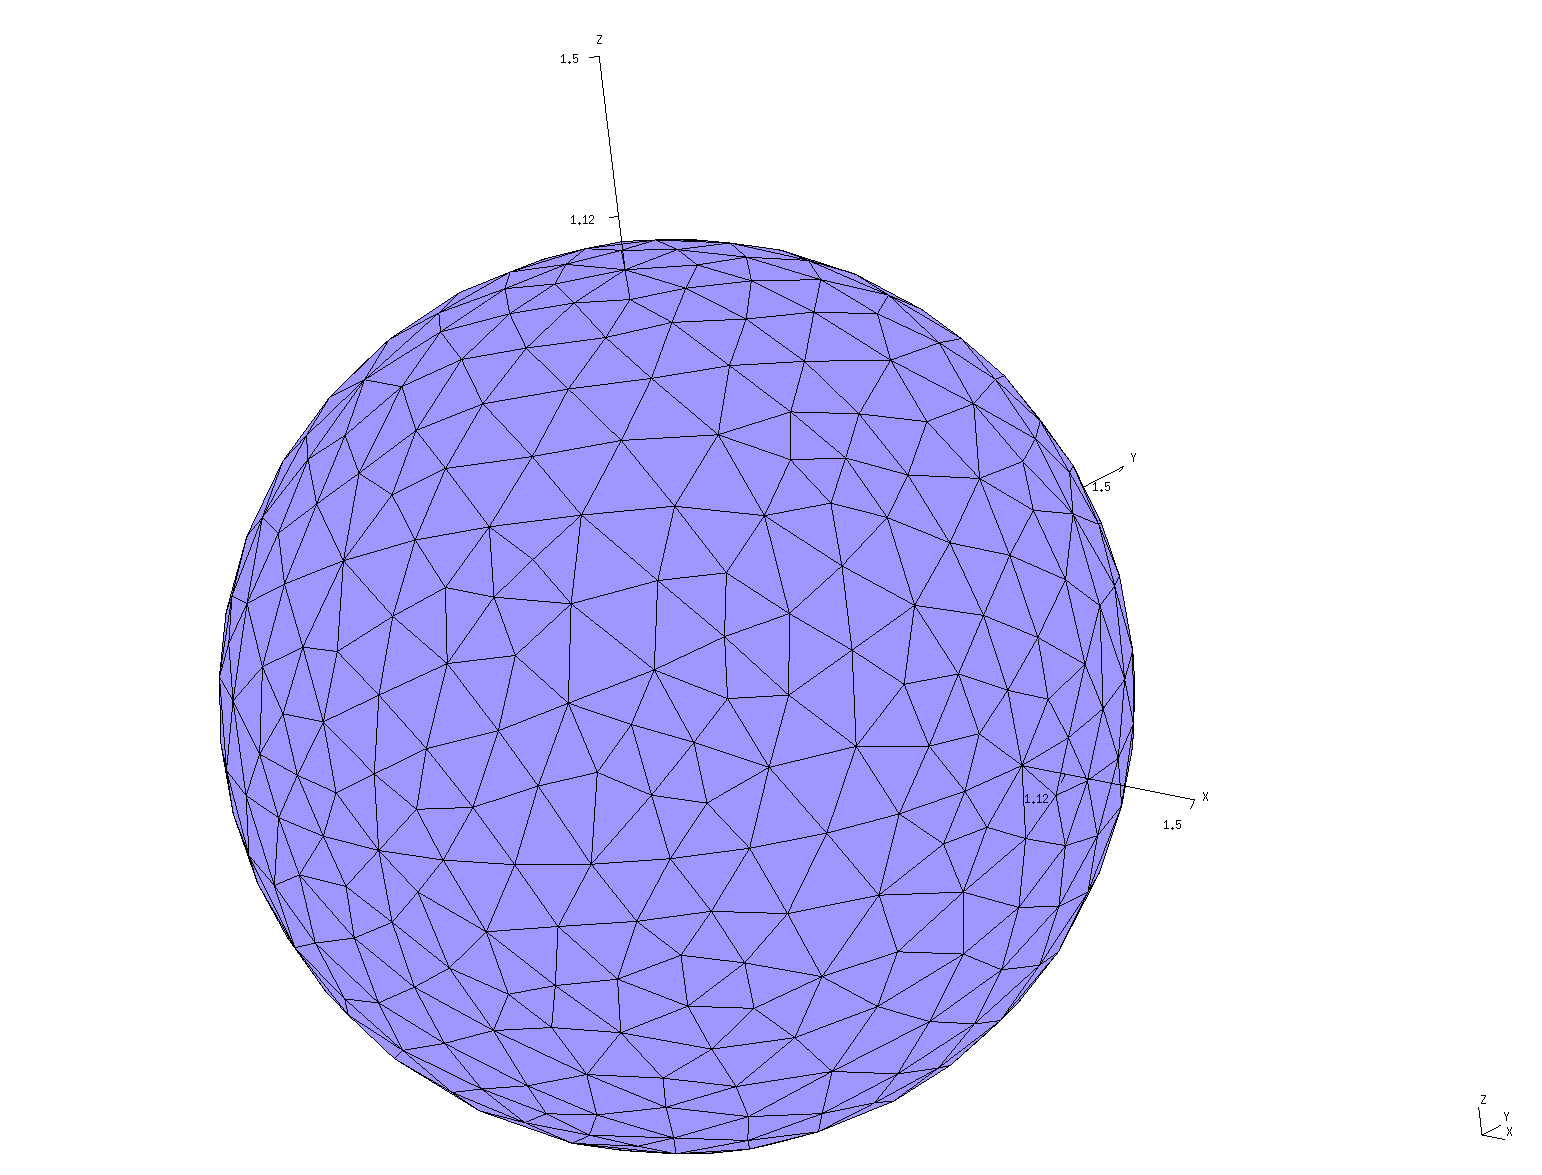 Sphere_1479 mesh image